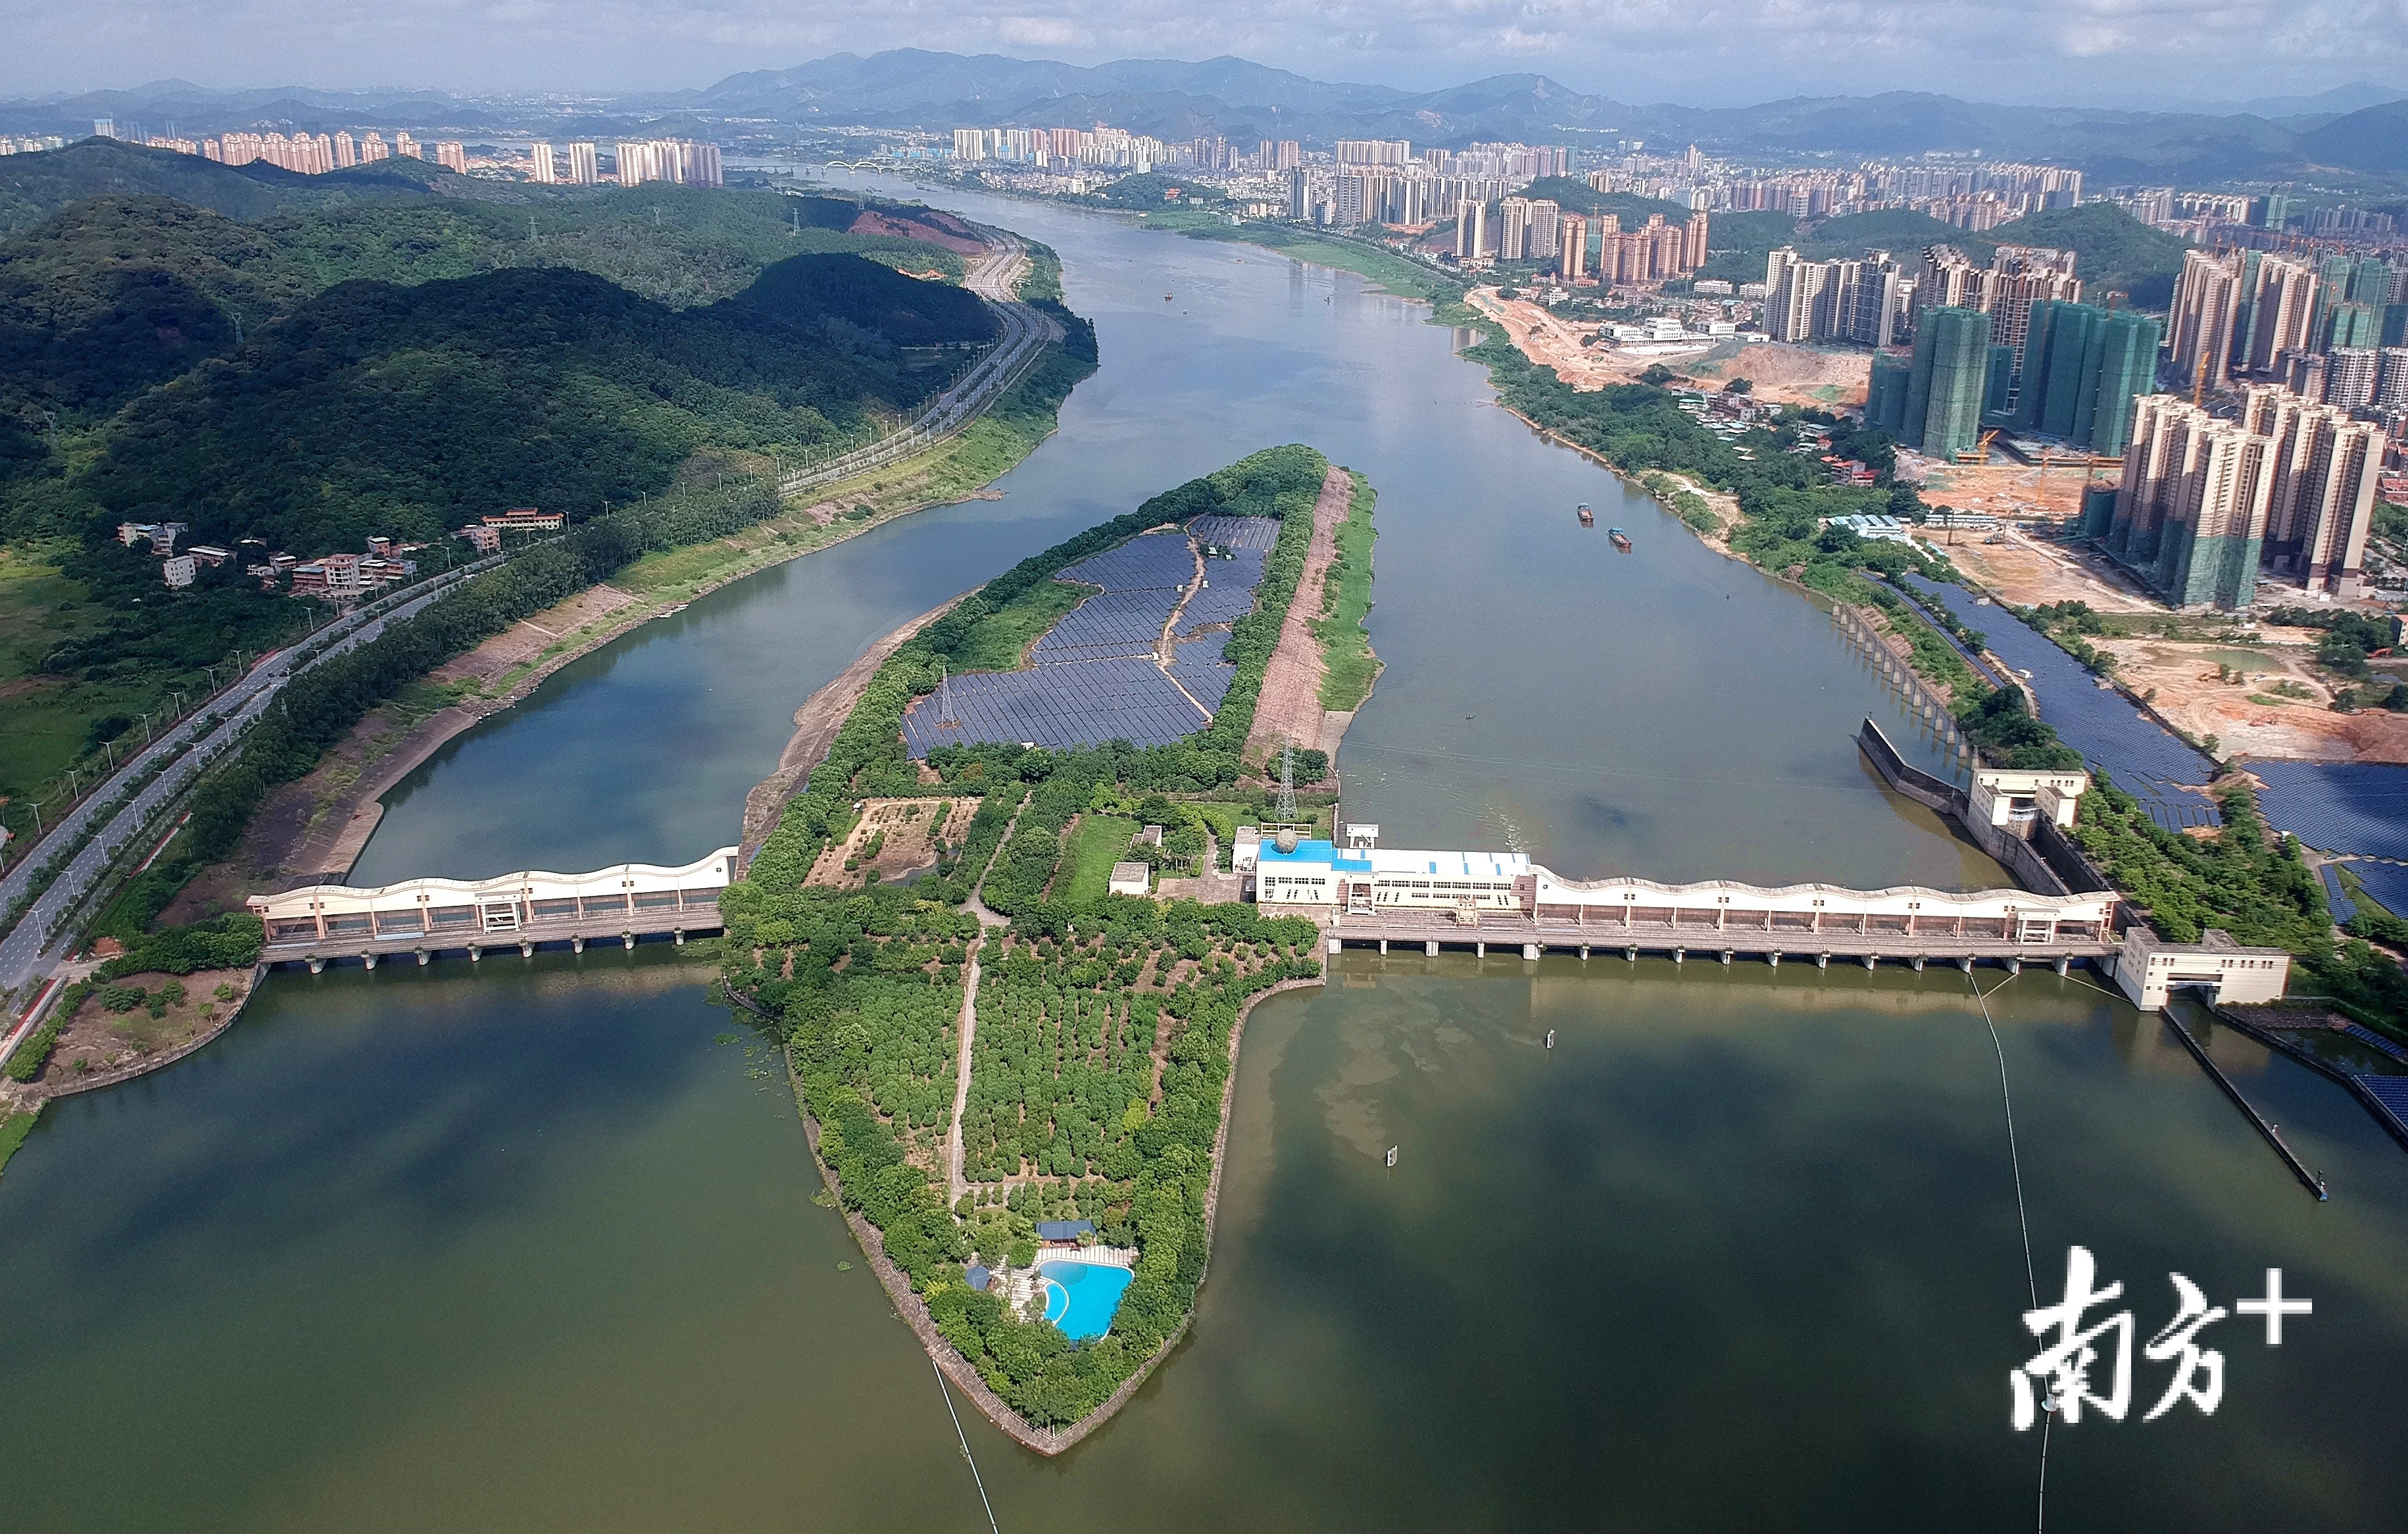 惠州东江水利枢纽具有改善水环境,发电等综合效益 南方日报记者 梁维